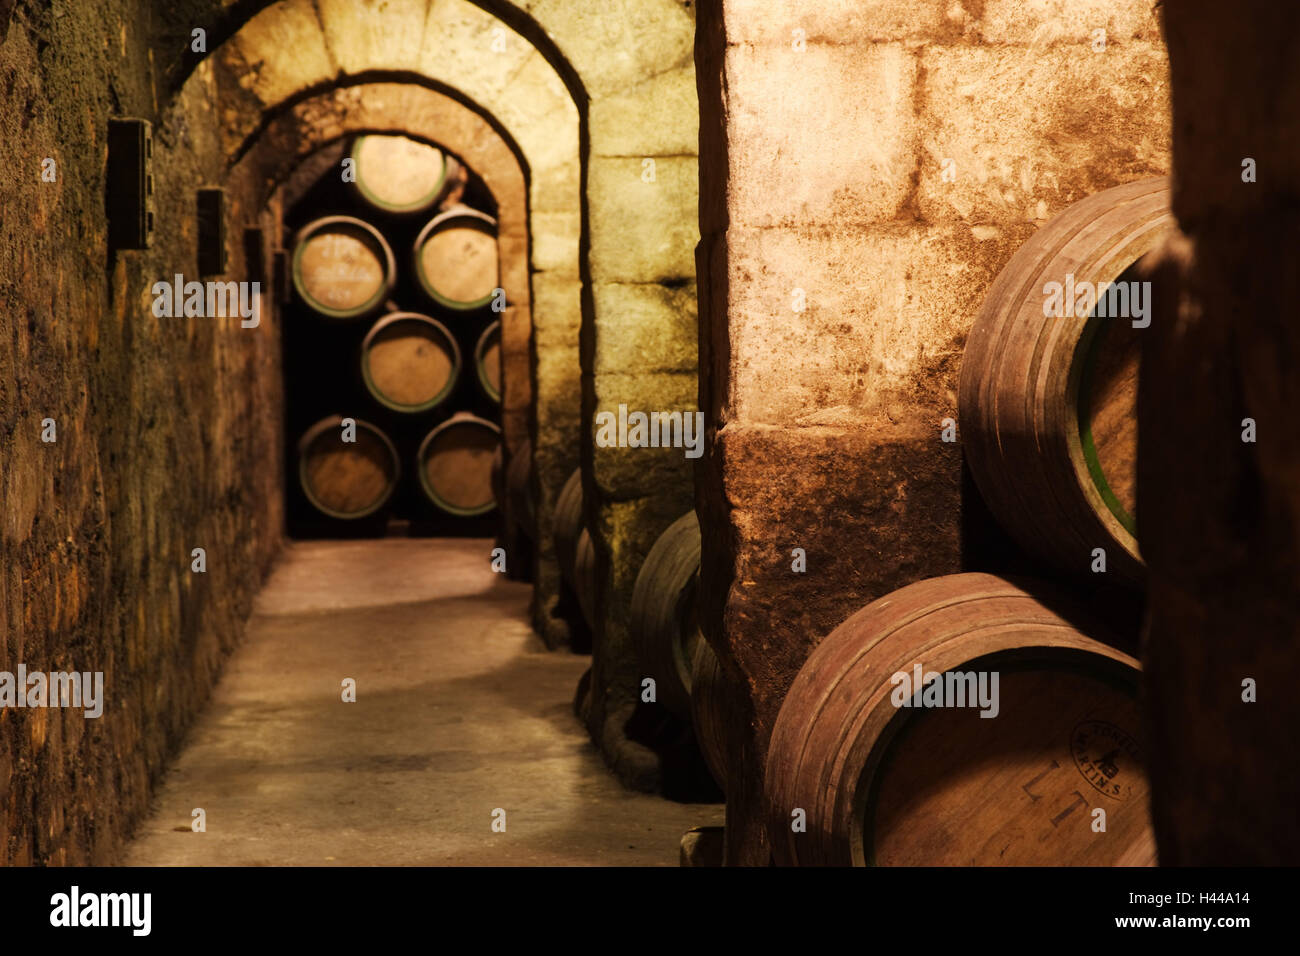 Spain, La Rioja, wine cellar, Stock Photo